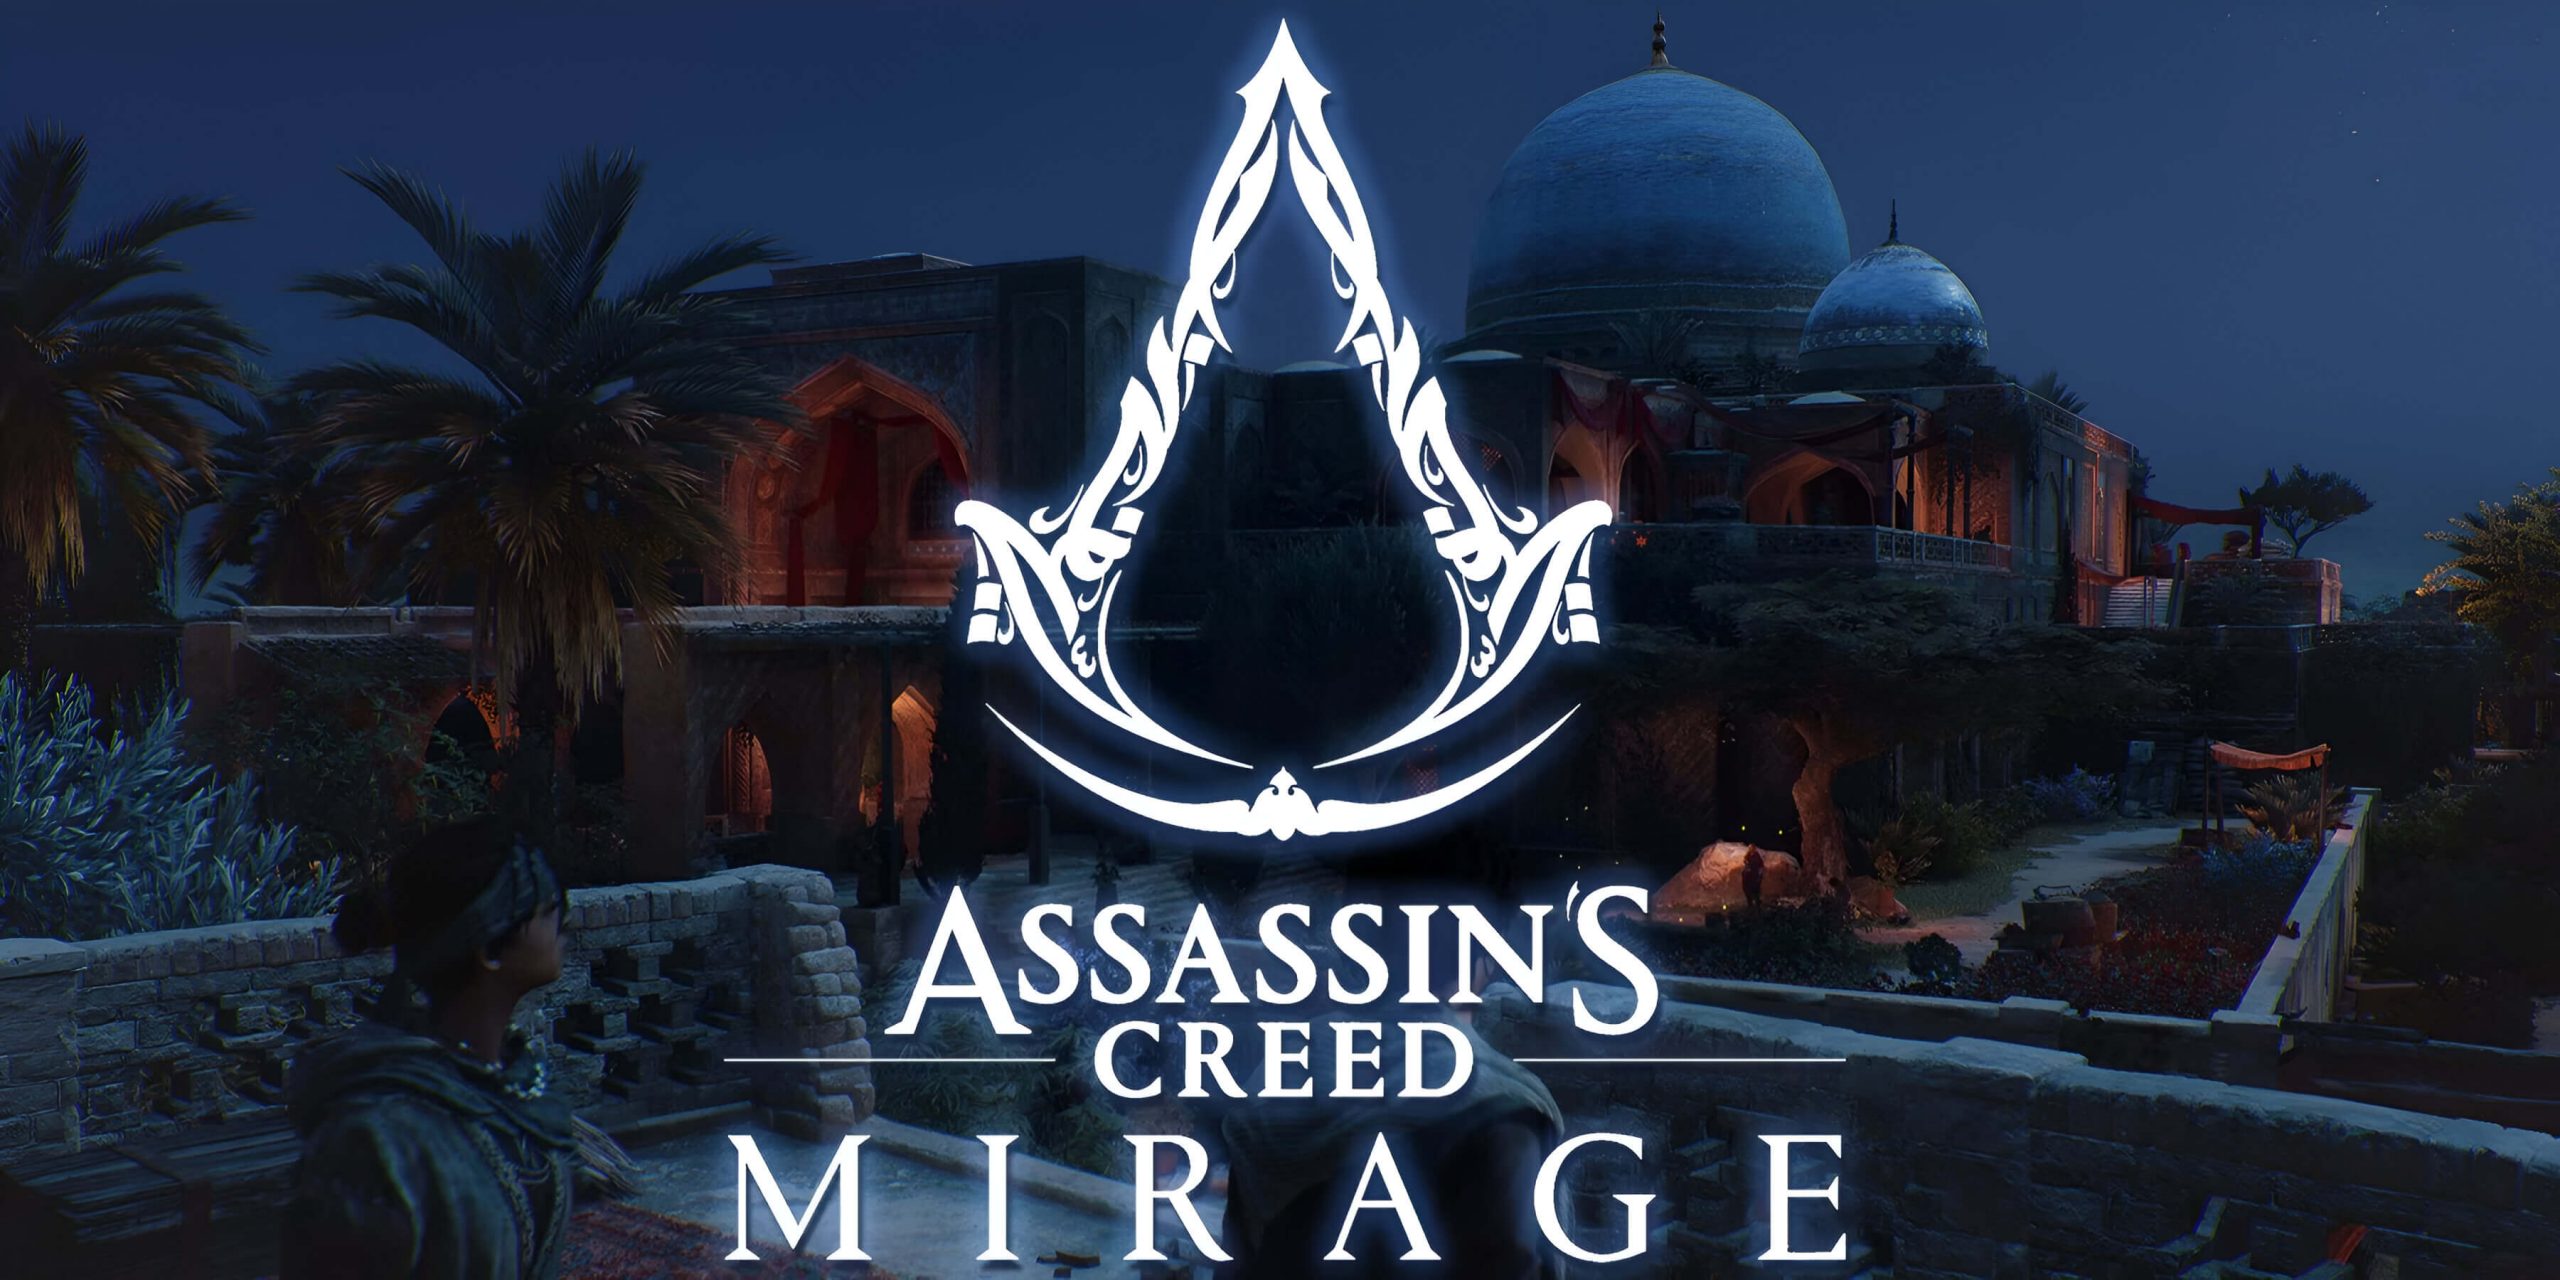 Assassin's Creed Mirage nhận bản cập nhật mới vào 9/4